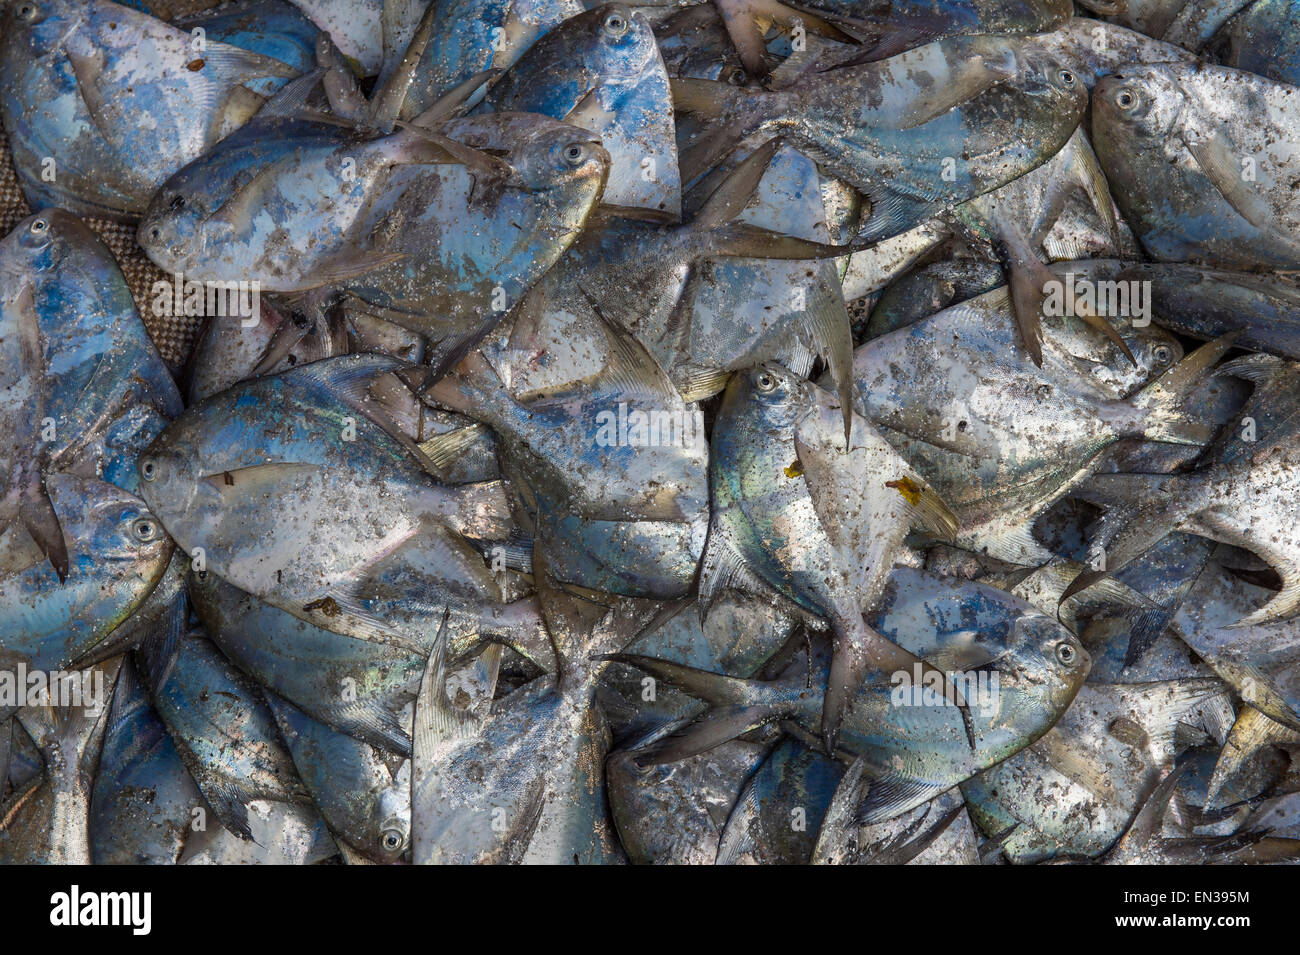 Poisson fraîchement pêché sur la glace, le marché aux poissons, fort Cochin, Kochi, Kerala, Inde Banque D'Images